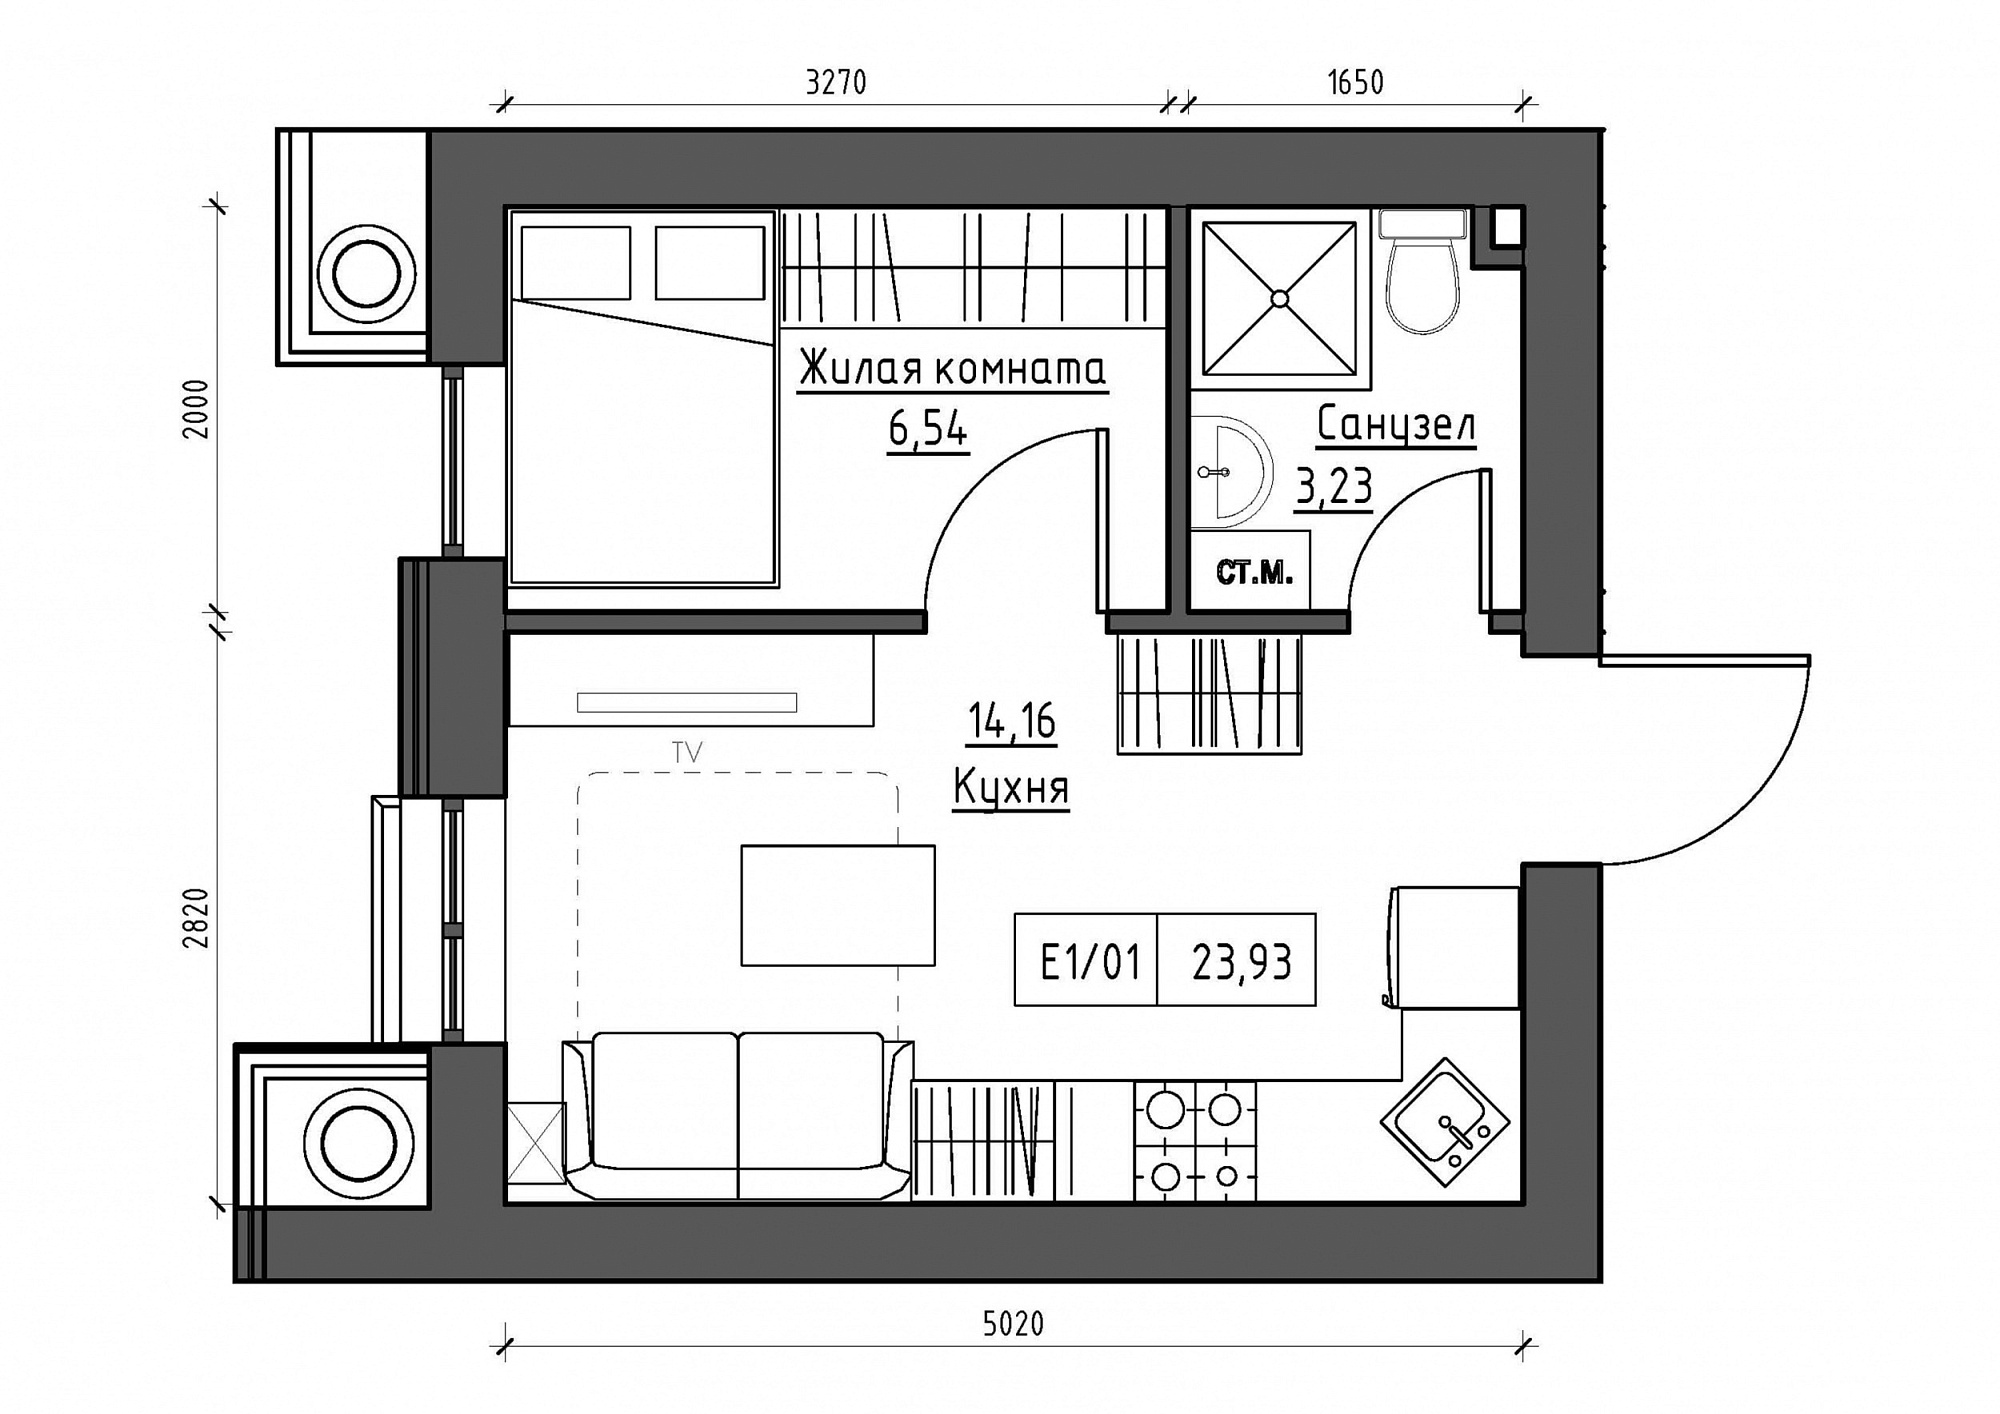 Планировка 1-к квартира площей 23.93м2, KS-012-04/0012.